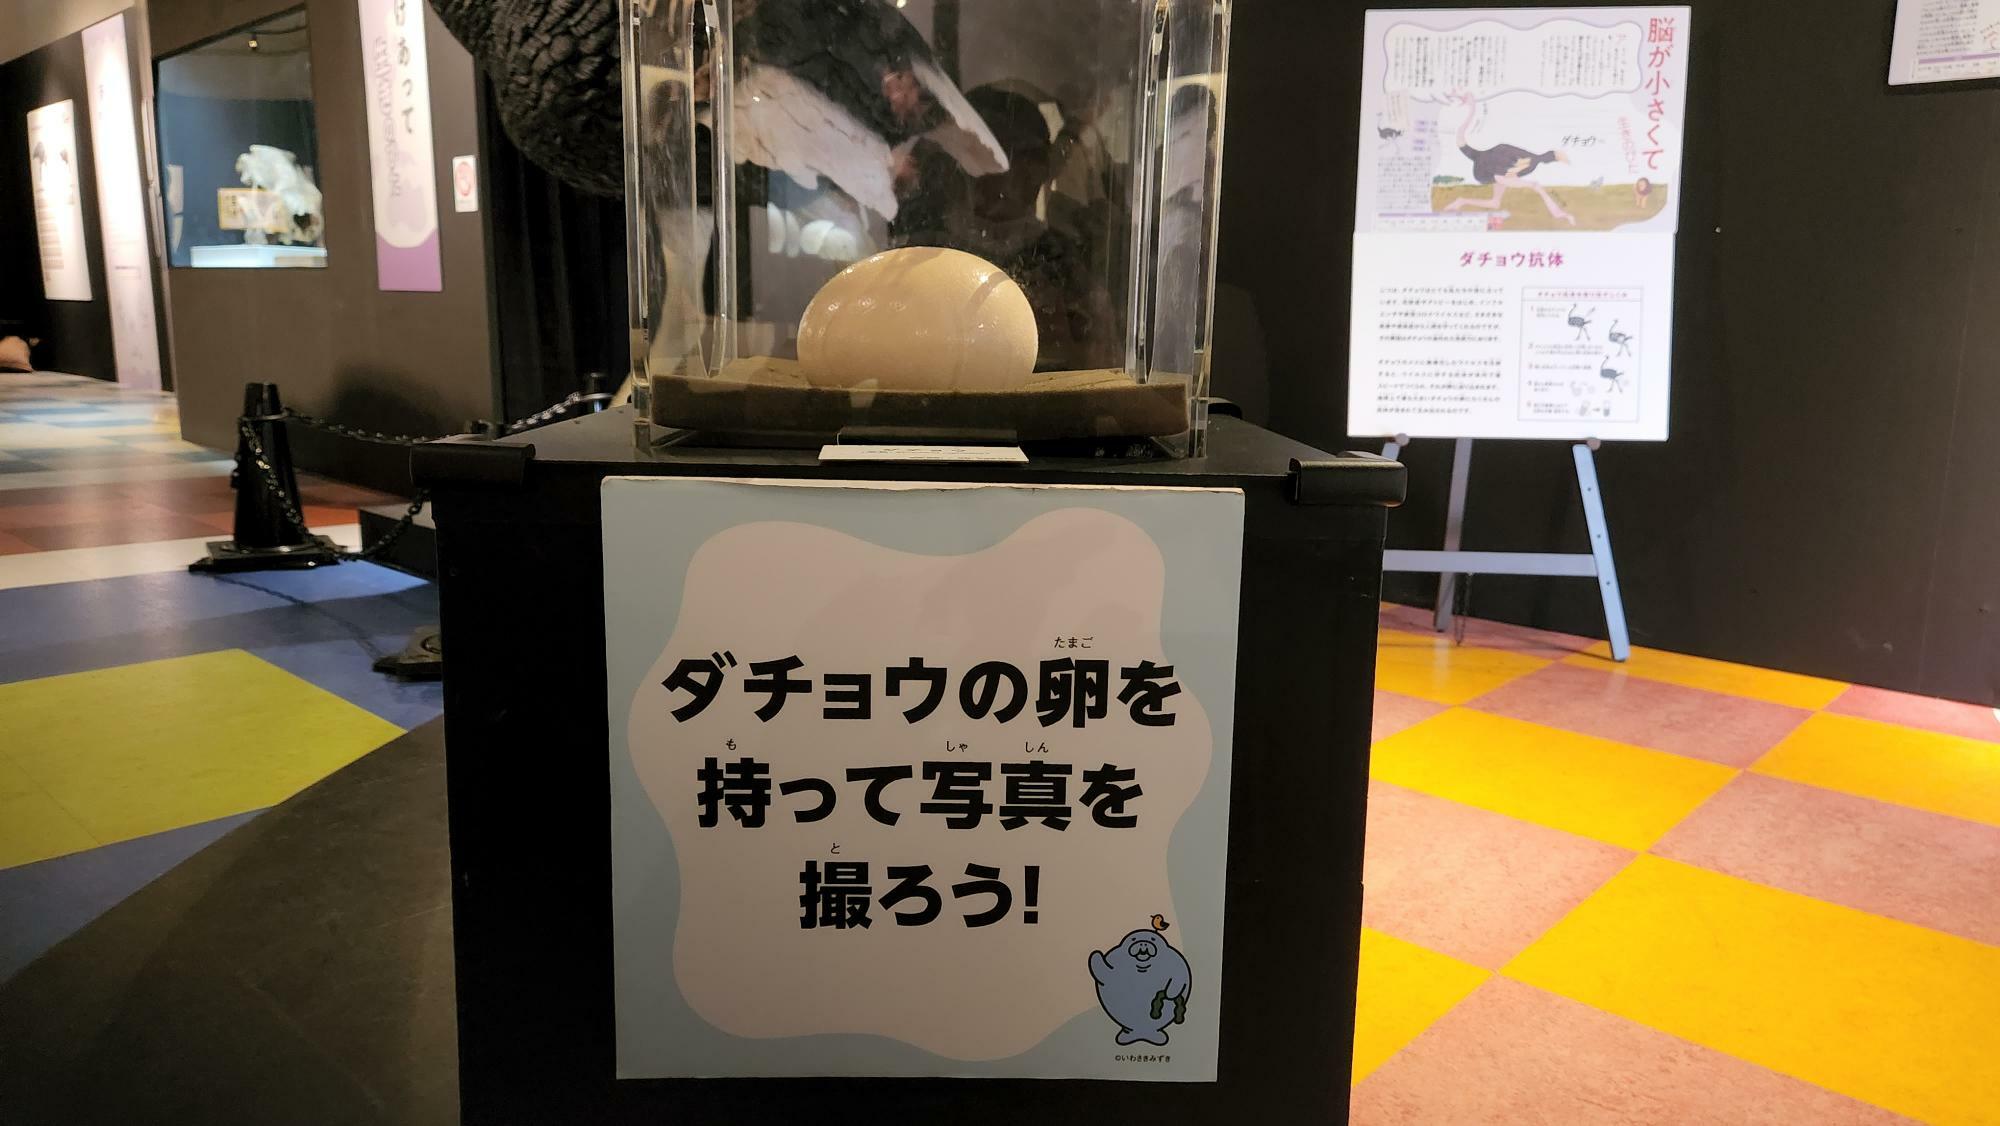 本物のダチョウの卵が展示されていました。